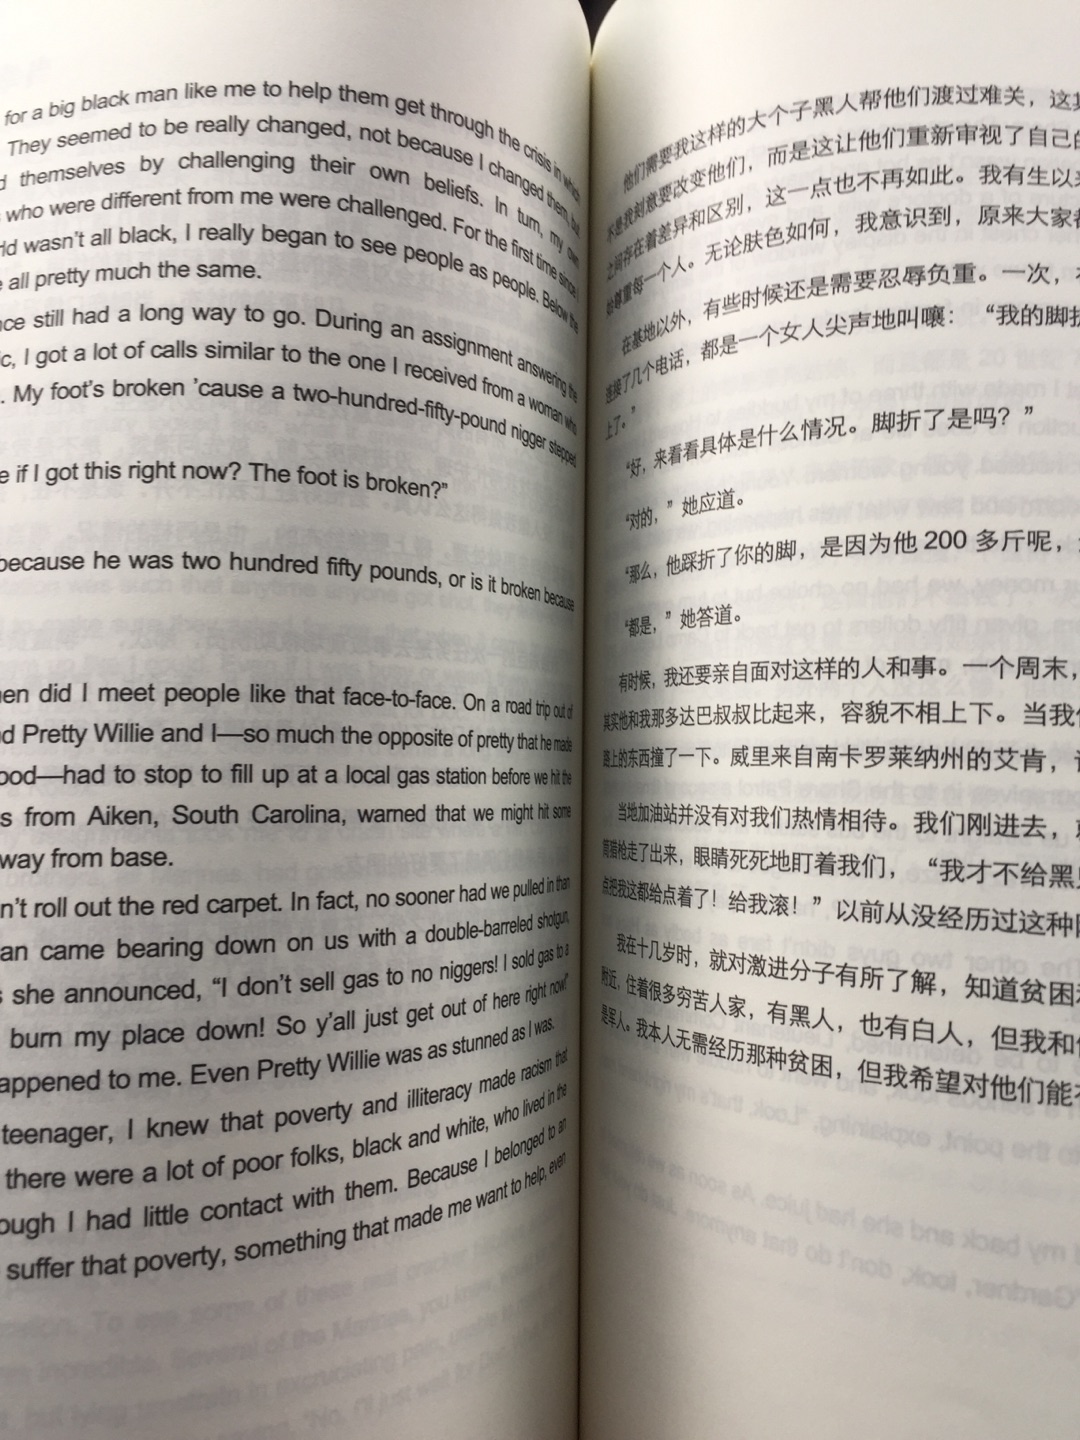 书本是挺大的一本，字体印刷清晰明辨，左面一页是英文，右边一页是中文，适合学习的小伙伴，书本质量可以，就是书本身材大了点儿，在家看还好，带在外面看有点不太方便！